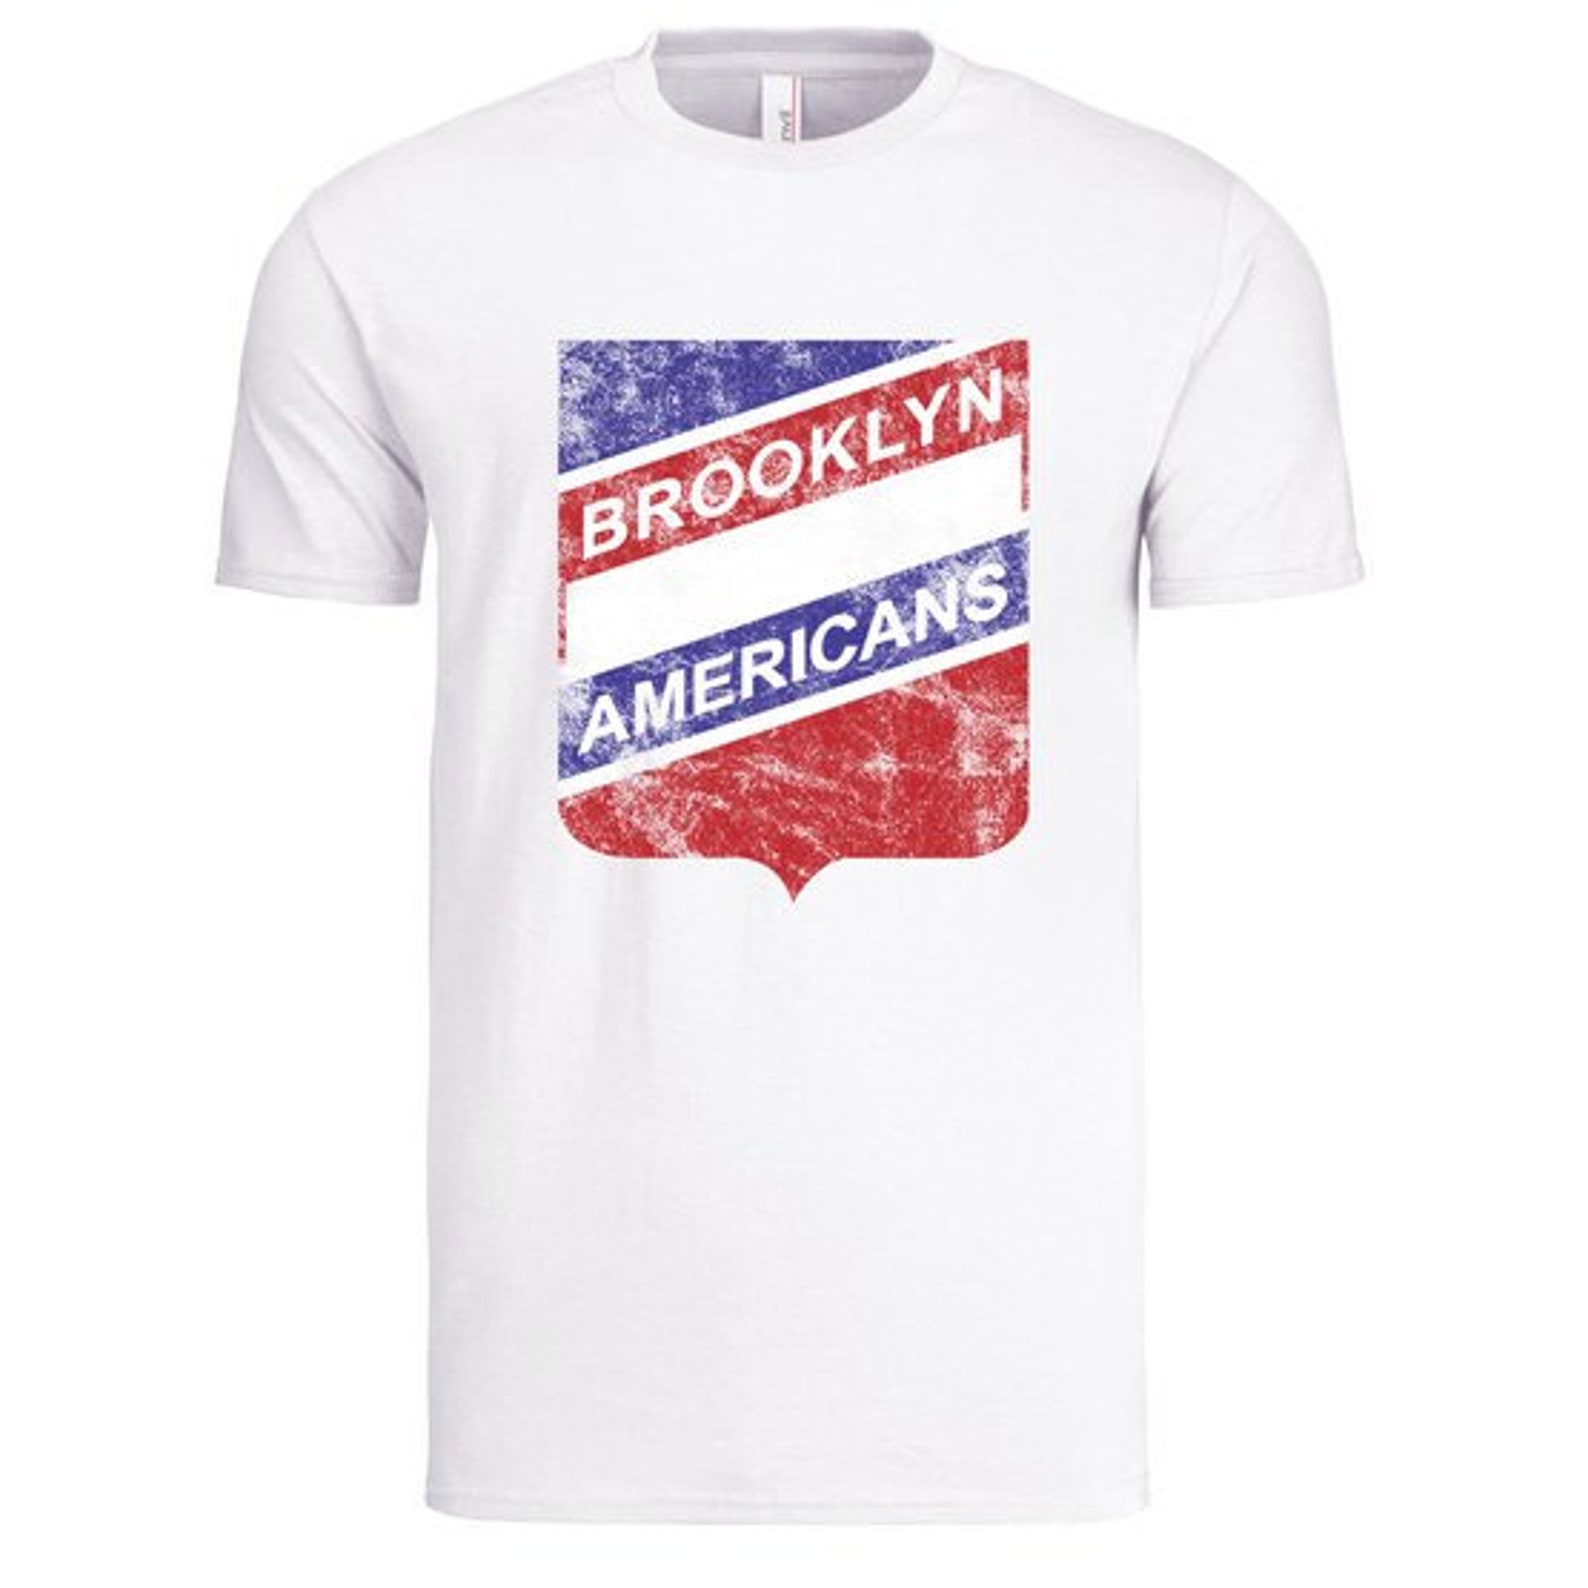 Brooklyn Americans Retro Hockey T-Shirt Mens Old School | Etsy